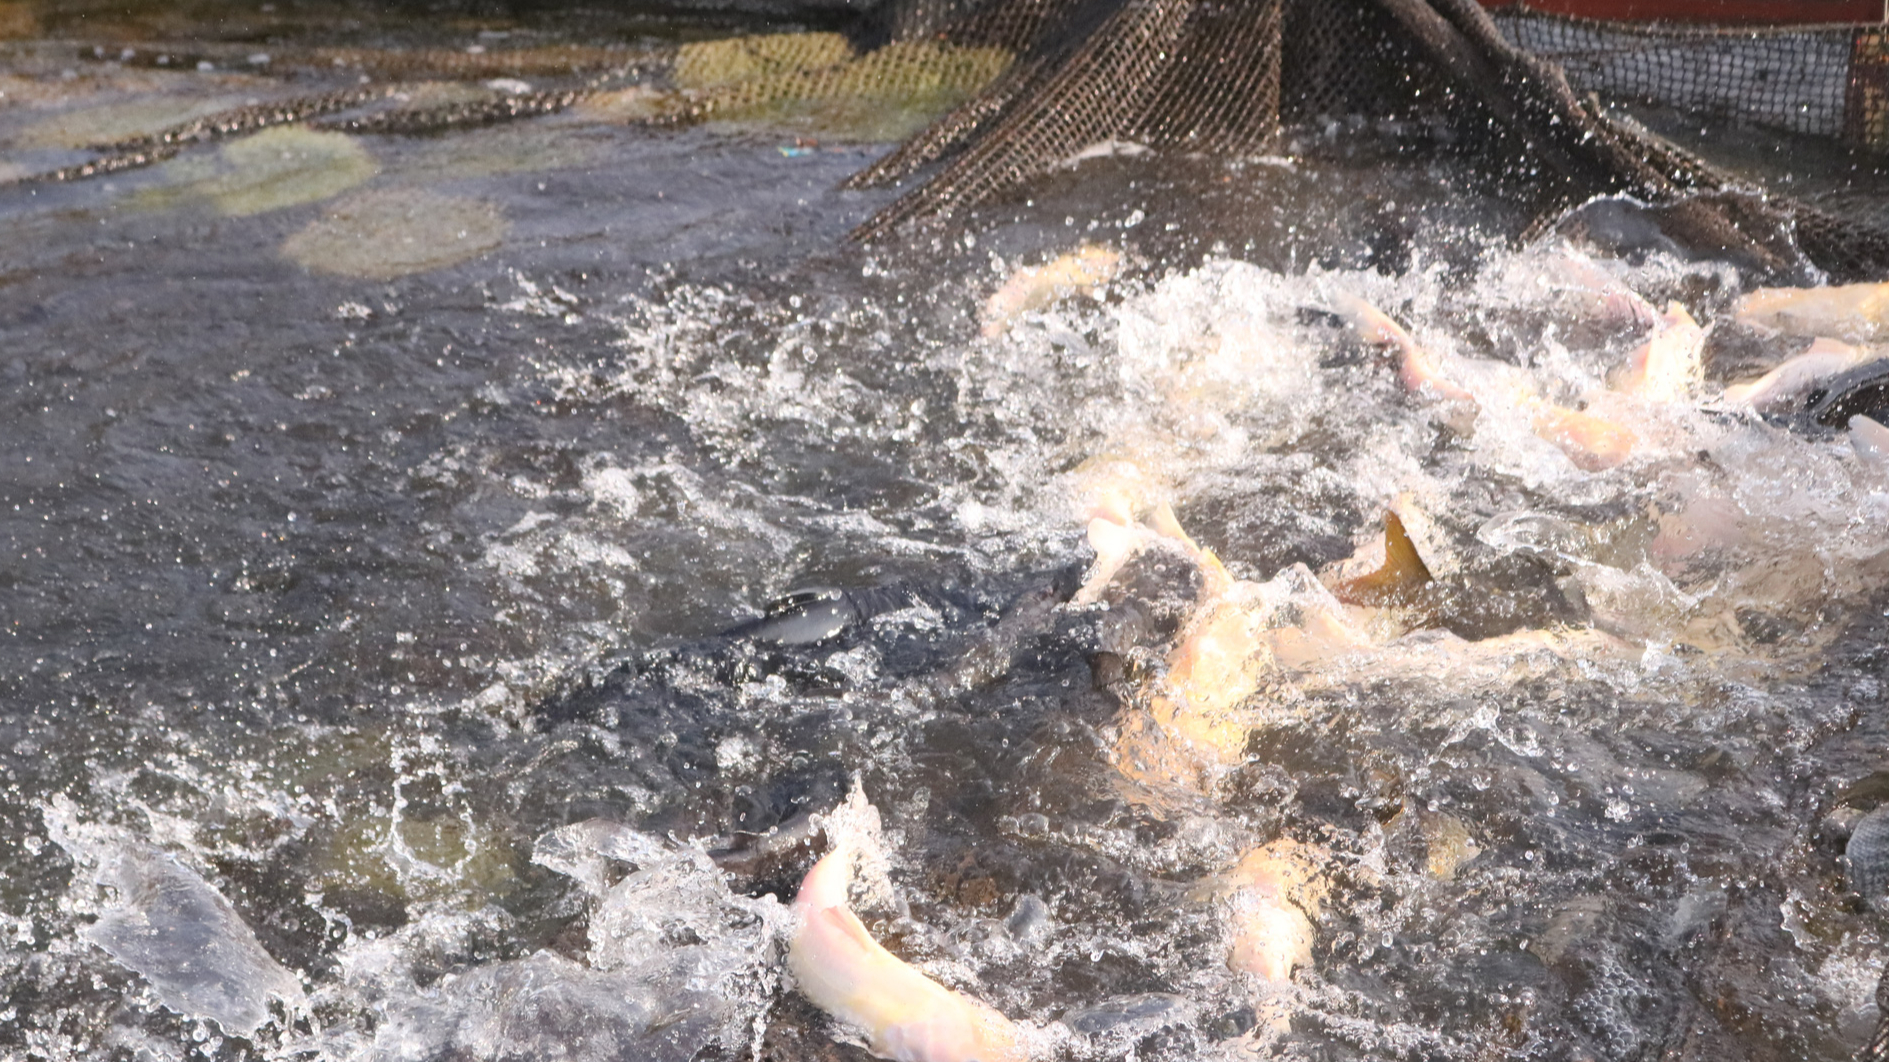 Nuôi cá lồng trên hồ sông Đà - tiềm năng được khai thác đúng hướng - Ảnh 2.